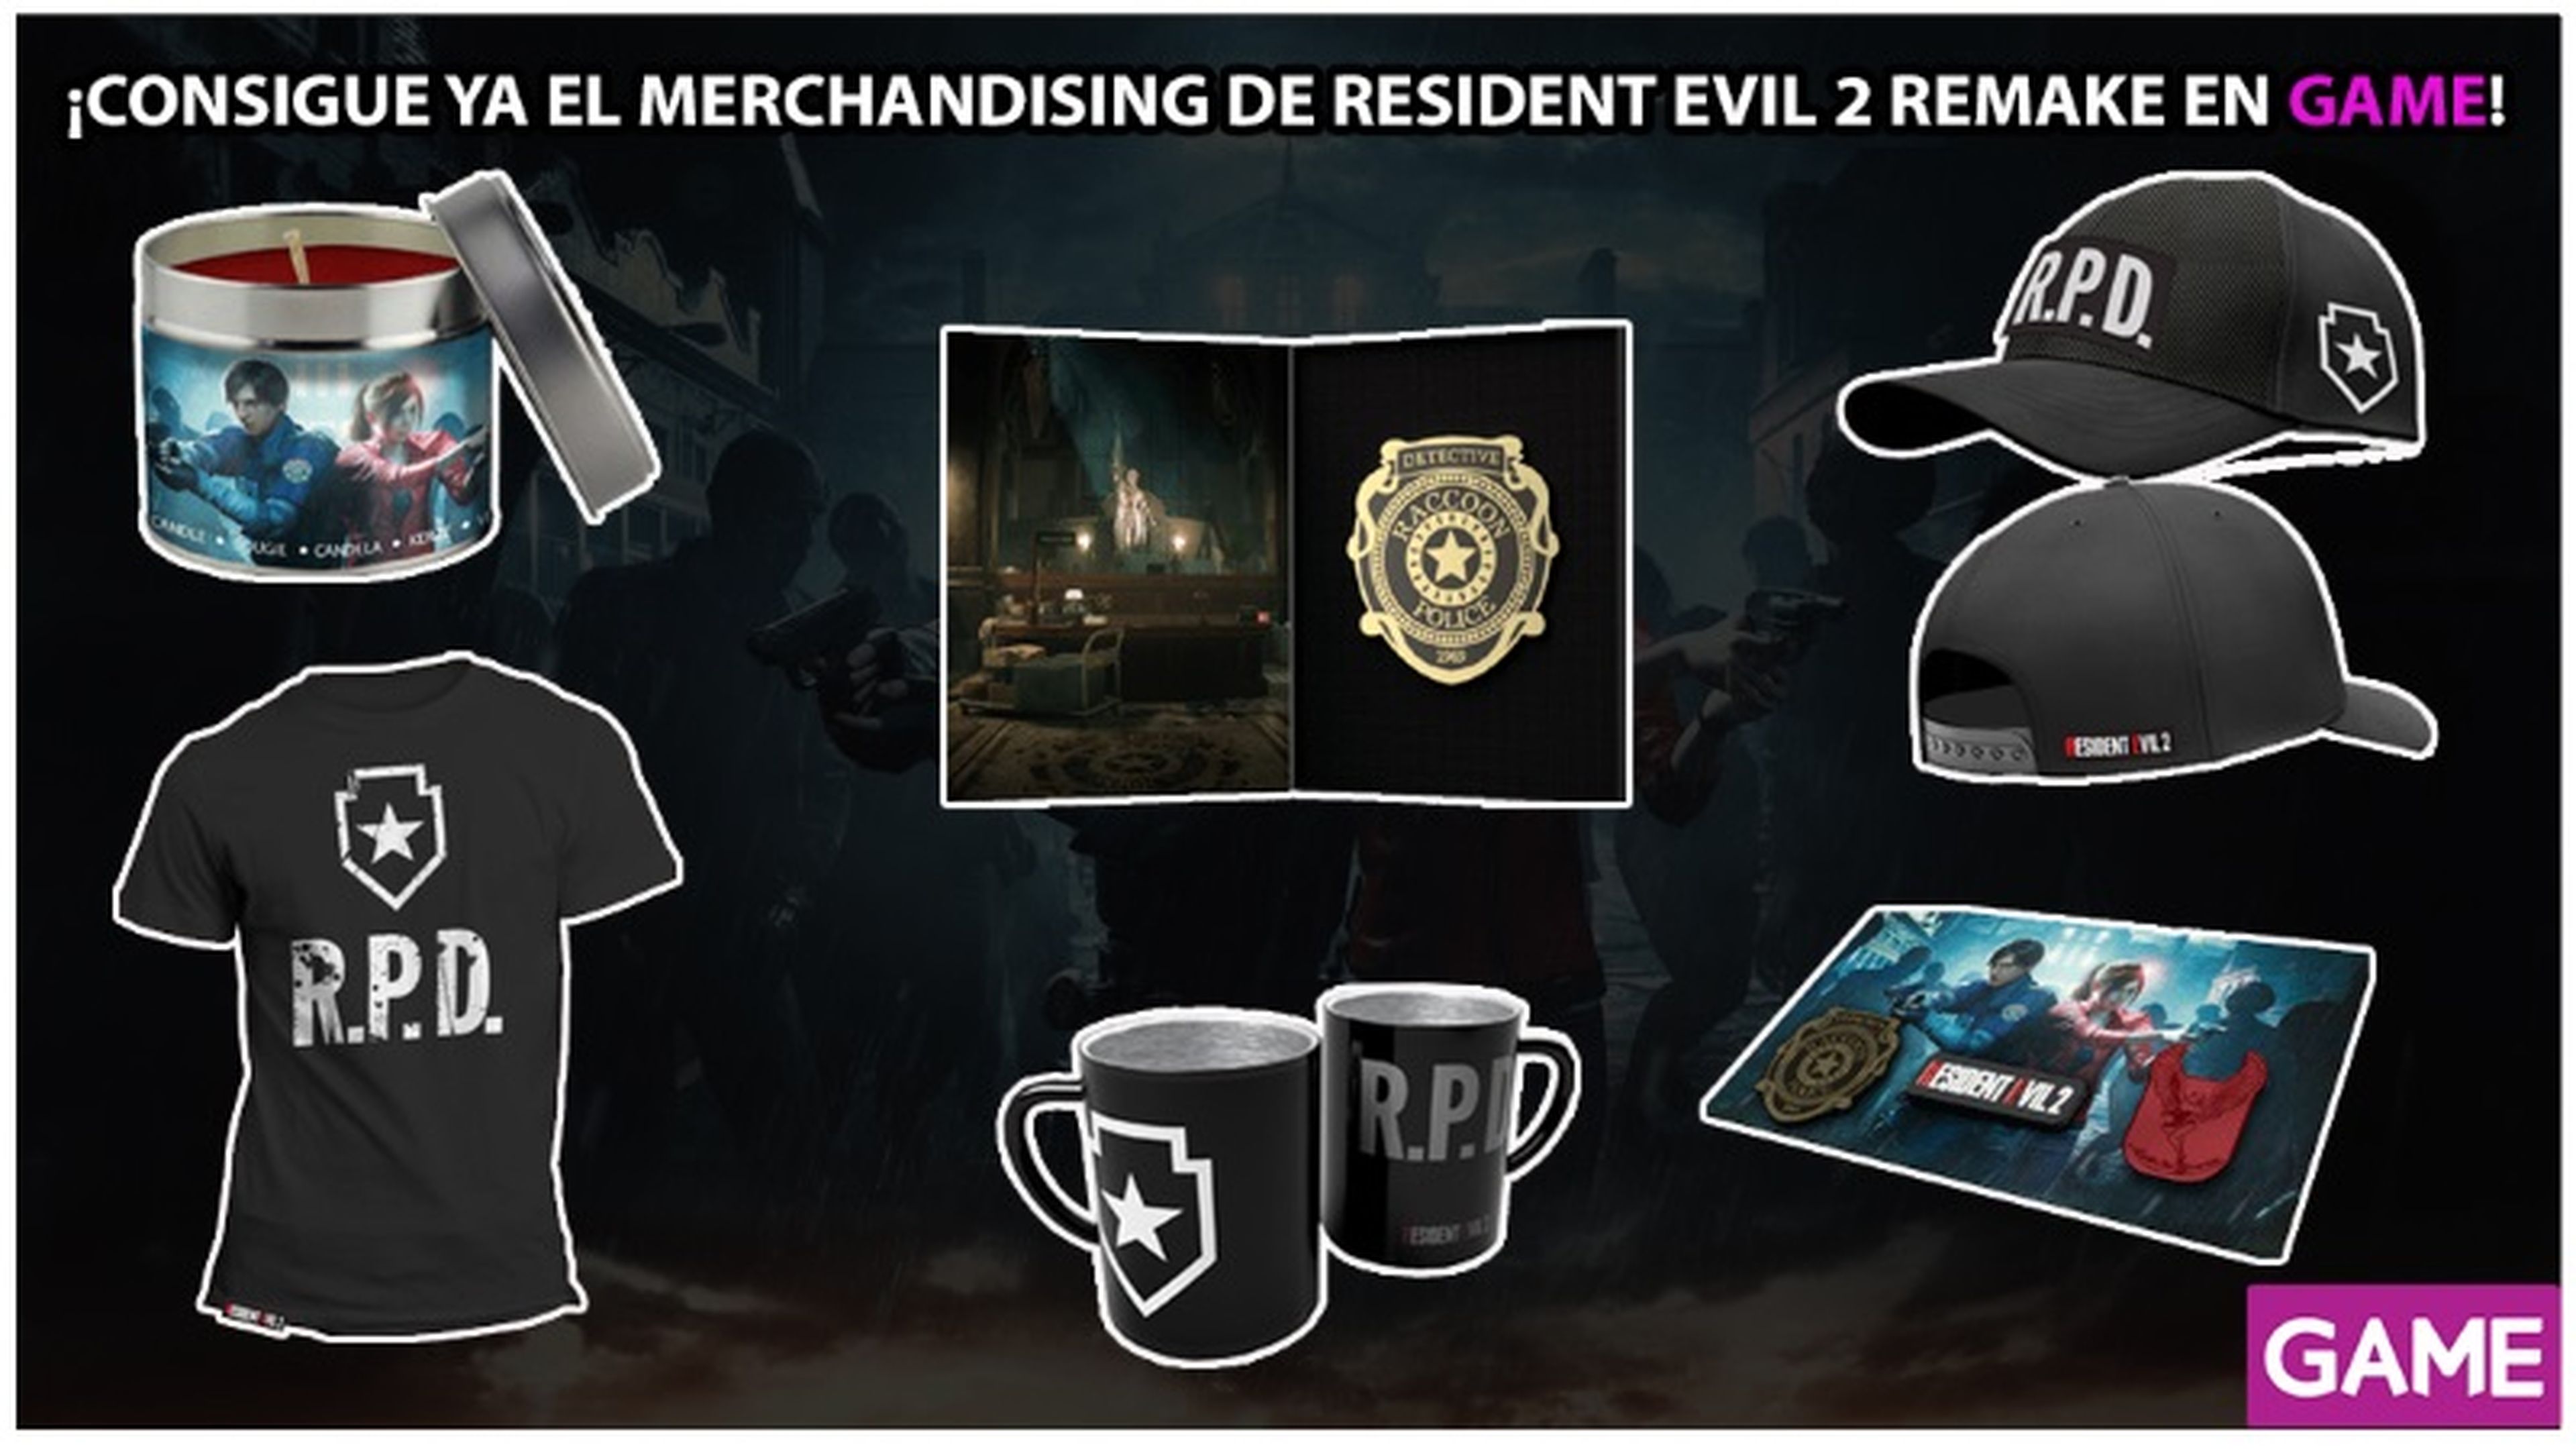 Merchandising de Resident Evil 2